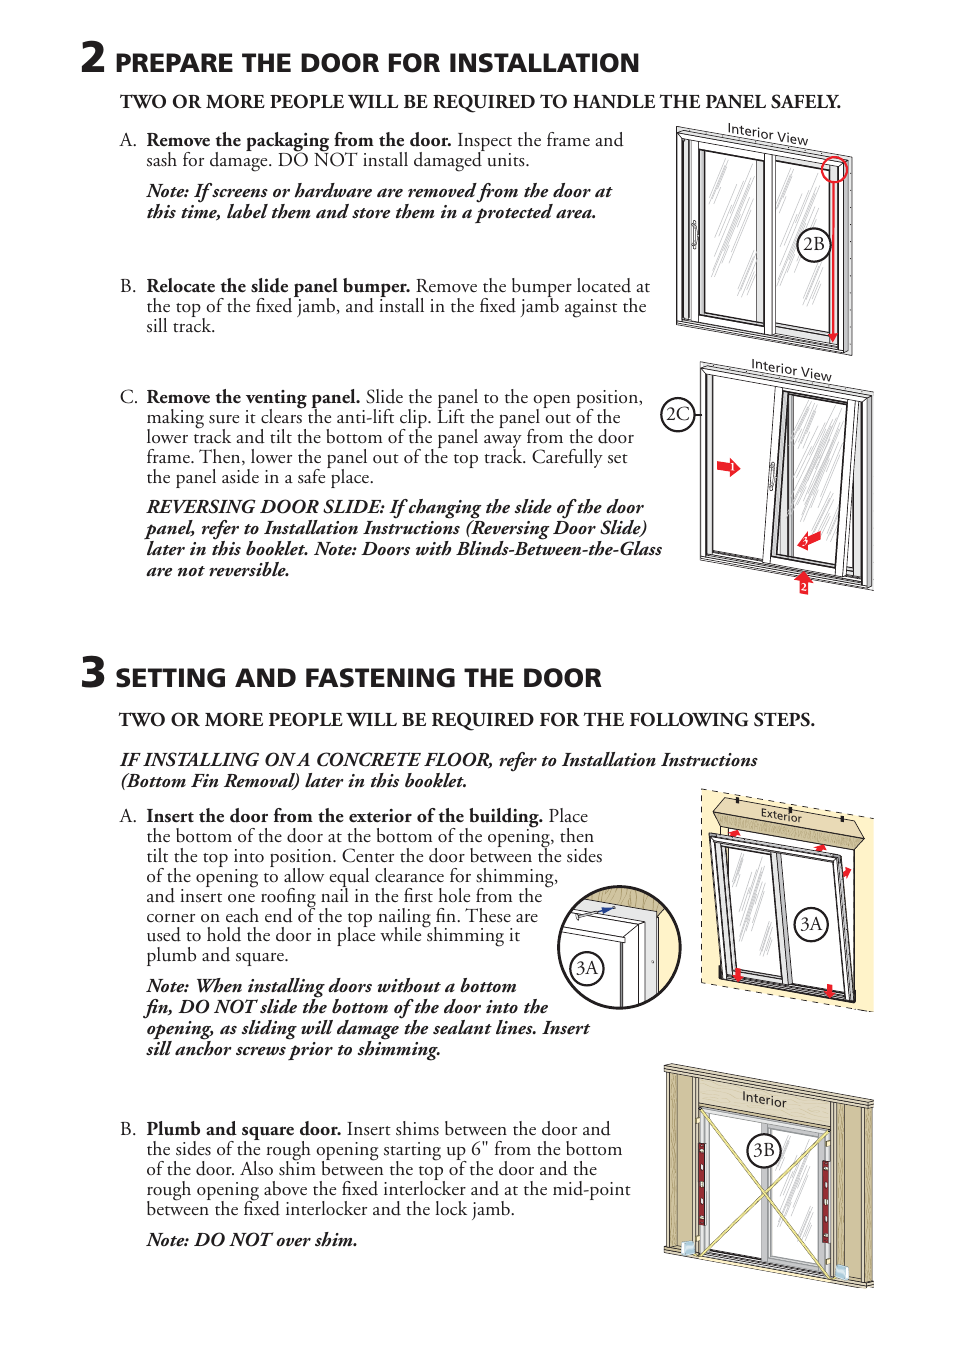 Prepare the door for installation, Setting and fastening the door Pella Sliding Patio Door